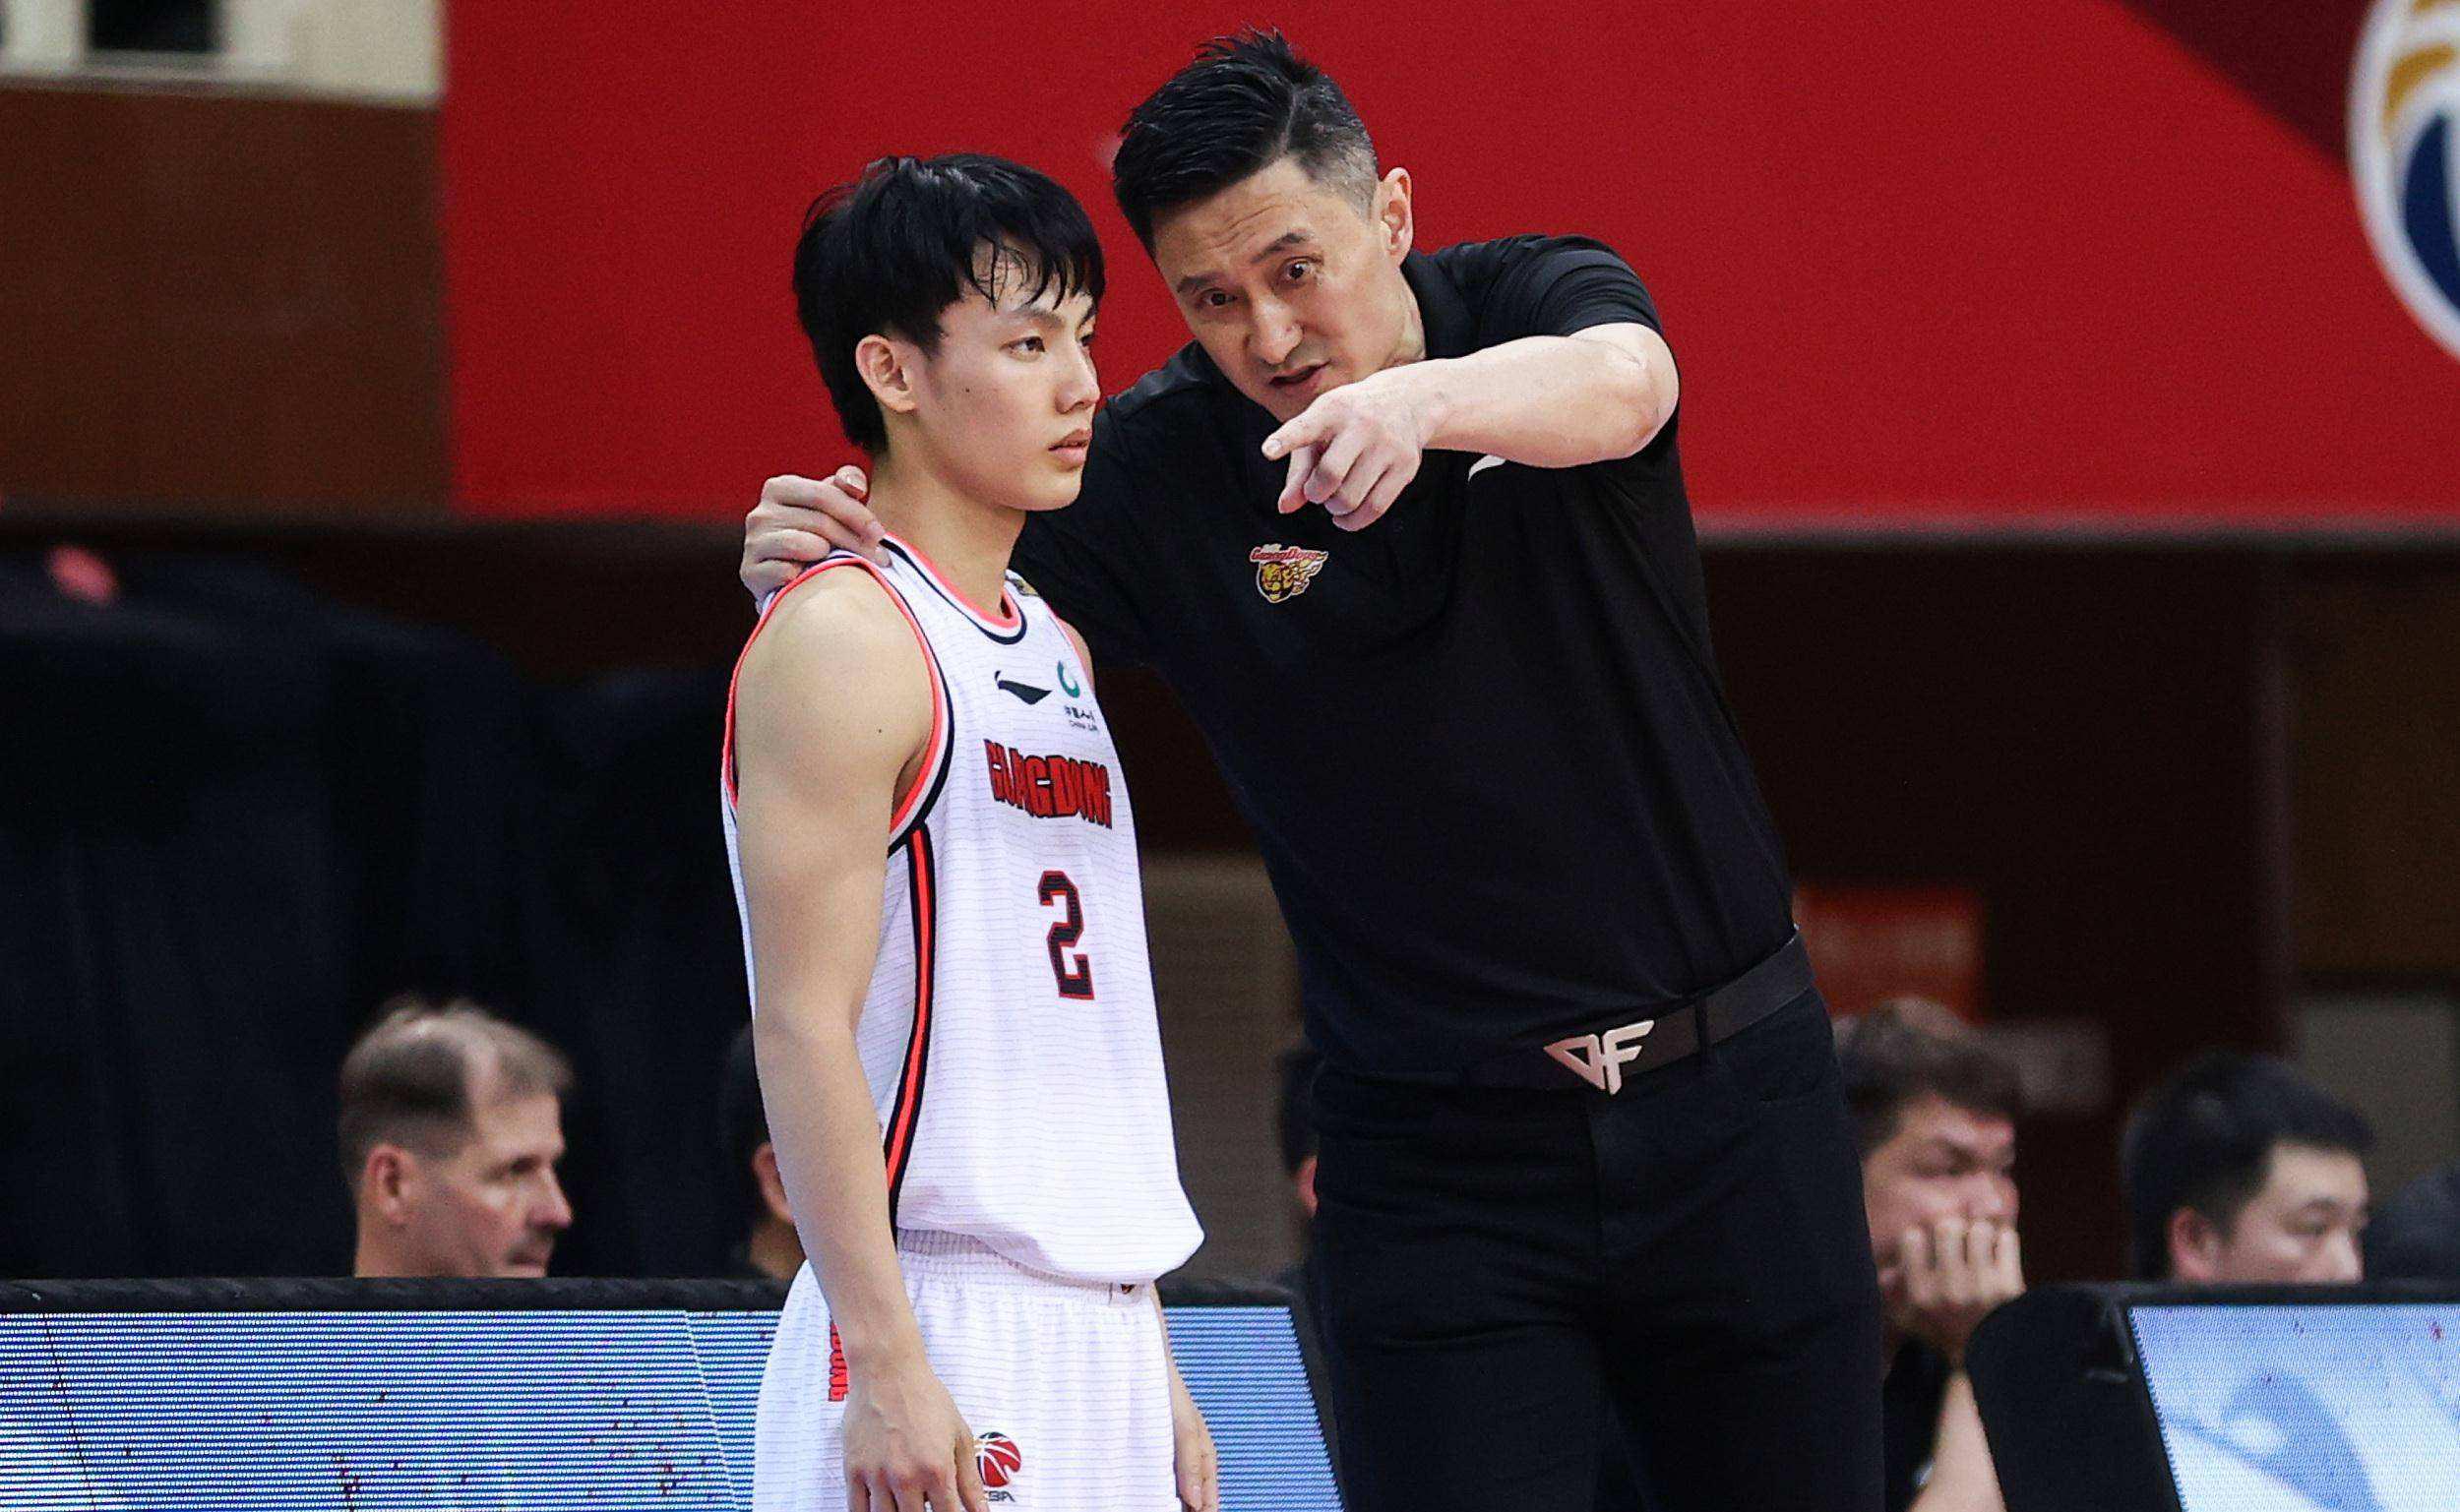 Danh sách 12 người trong thông báo chính thức bóng rổ nam Trung Quốc, lý do của Xu Jie một lần nữa đã được công bố, Du Feng không thấy người sai (2)